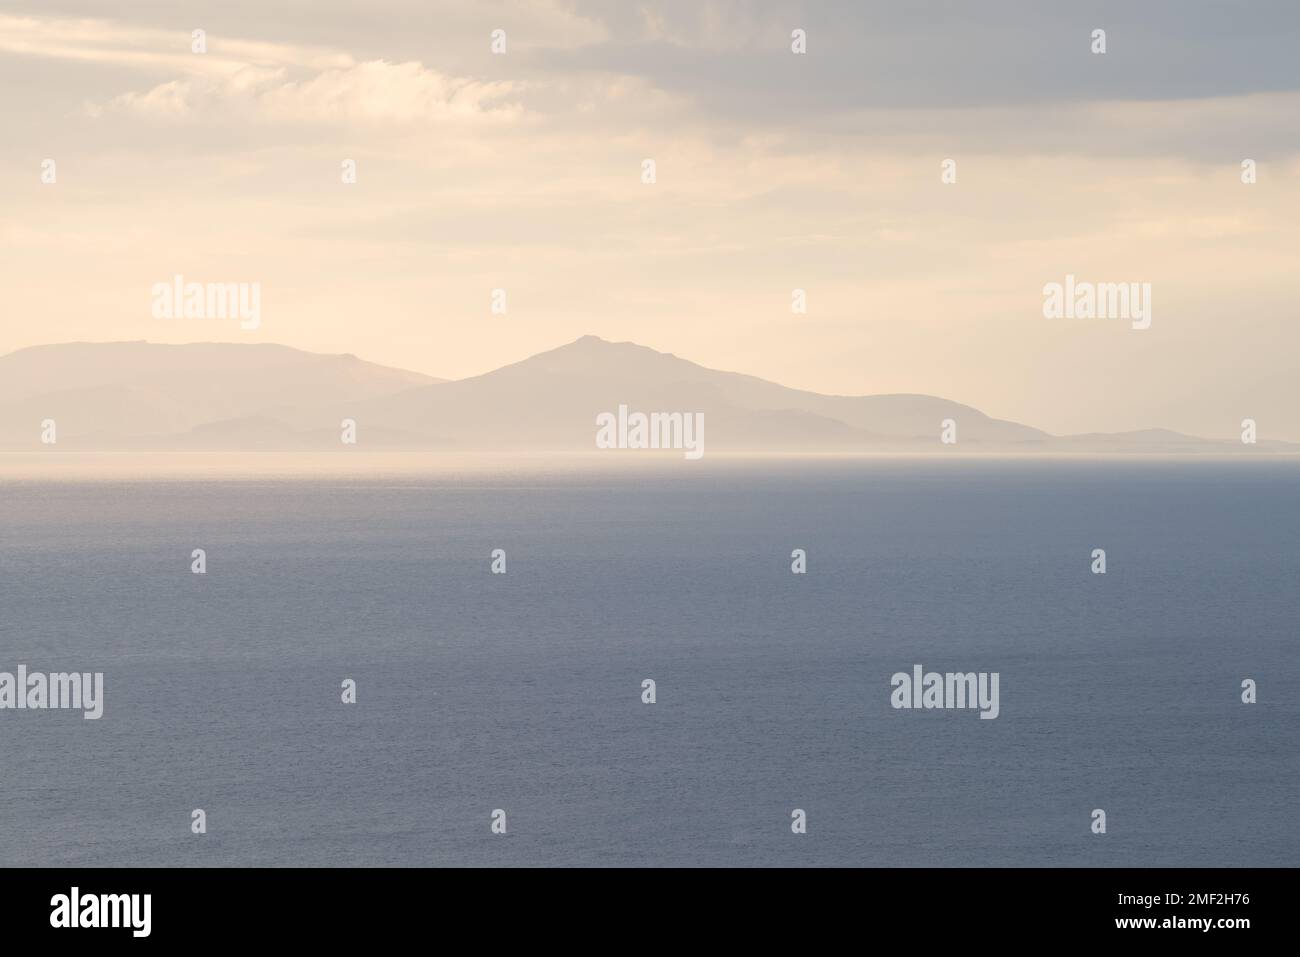 Île de Harris et Lewis vue de l'île de Skye avec une belle lumière de rêve sur le paysage côtier. Scottish Hebrides, Royaume-Uni. Banque D'Images